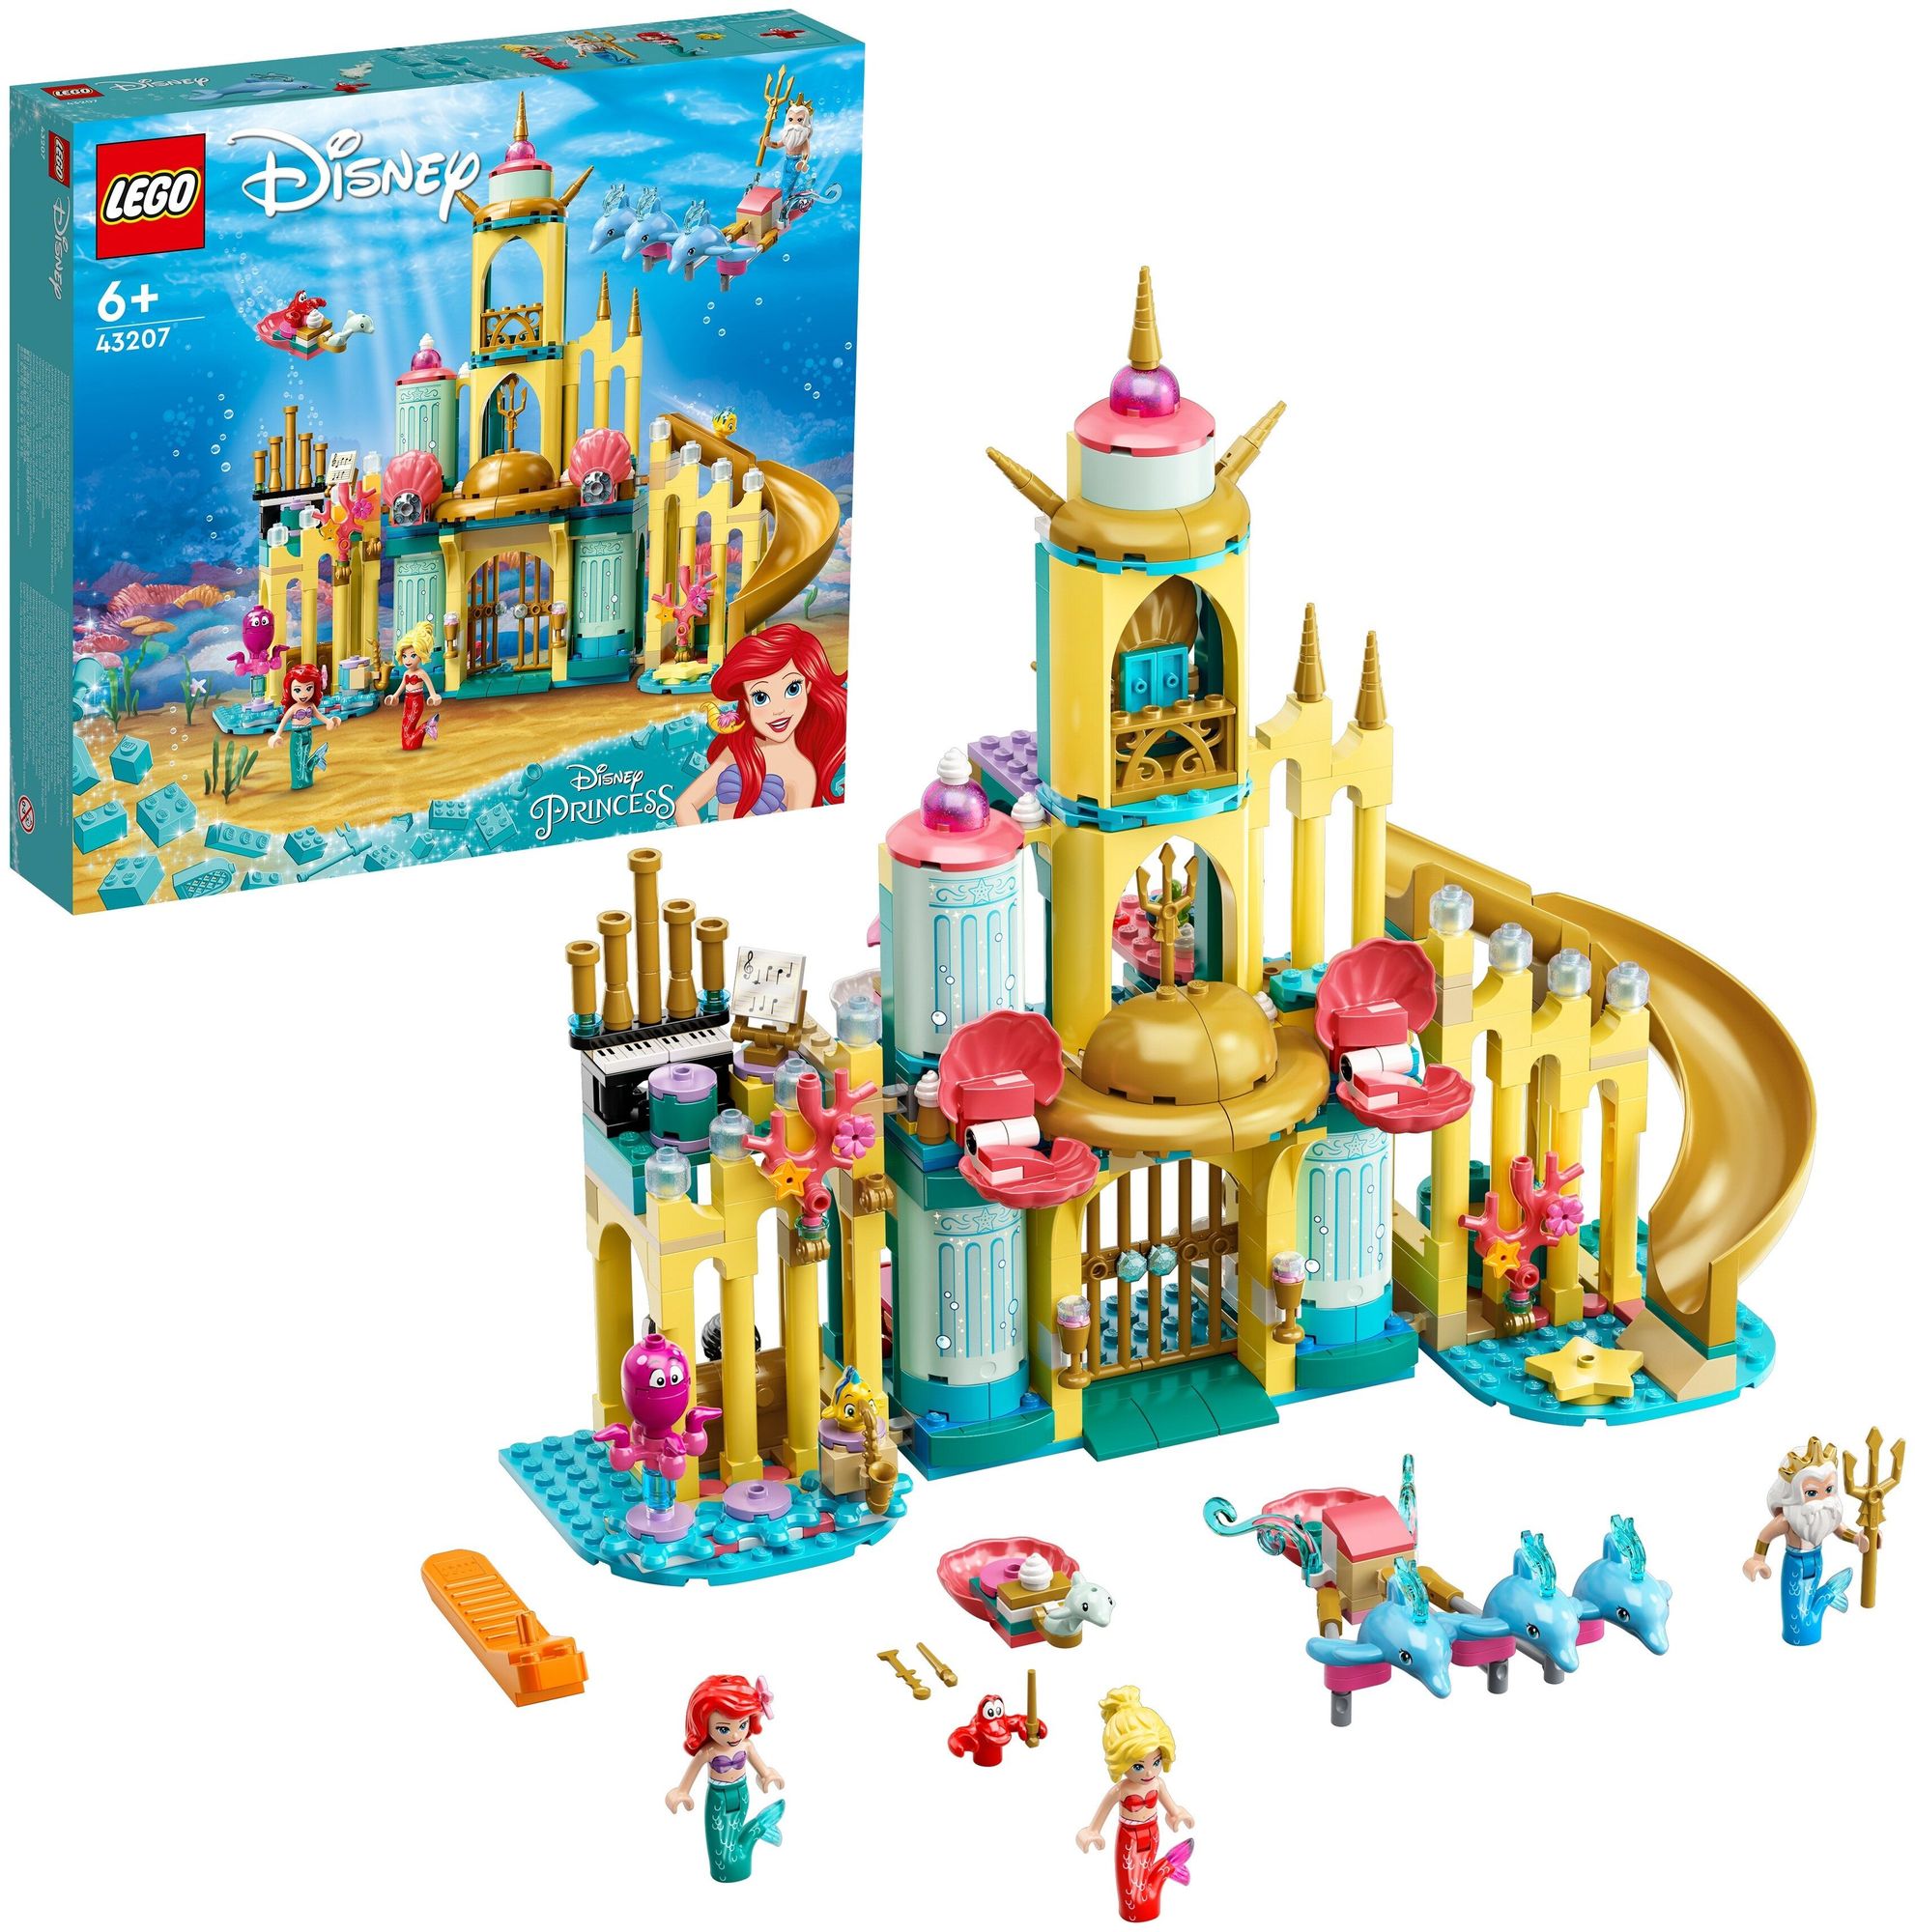 Конструктор LEGO Disney Princess Подводный дворец Ариэль 43207 конструктор lego disney princess 43224 замок короля магнифико